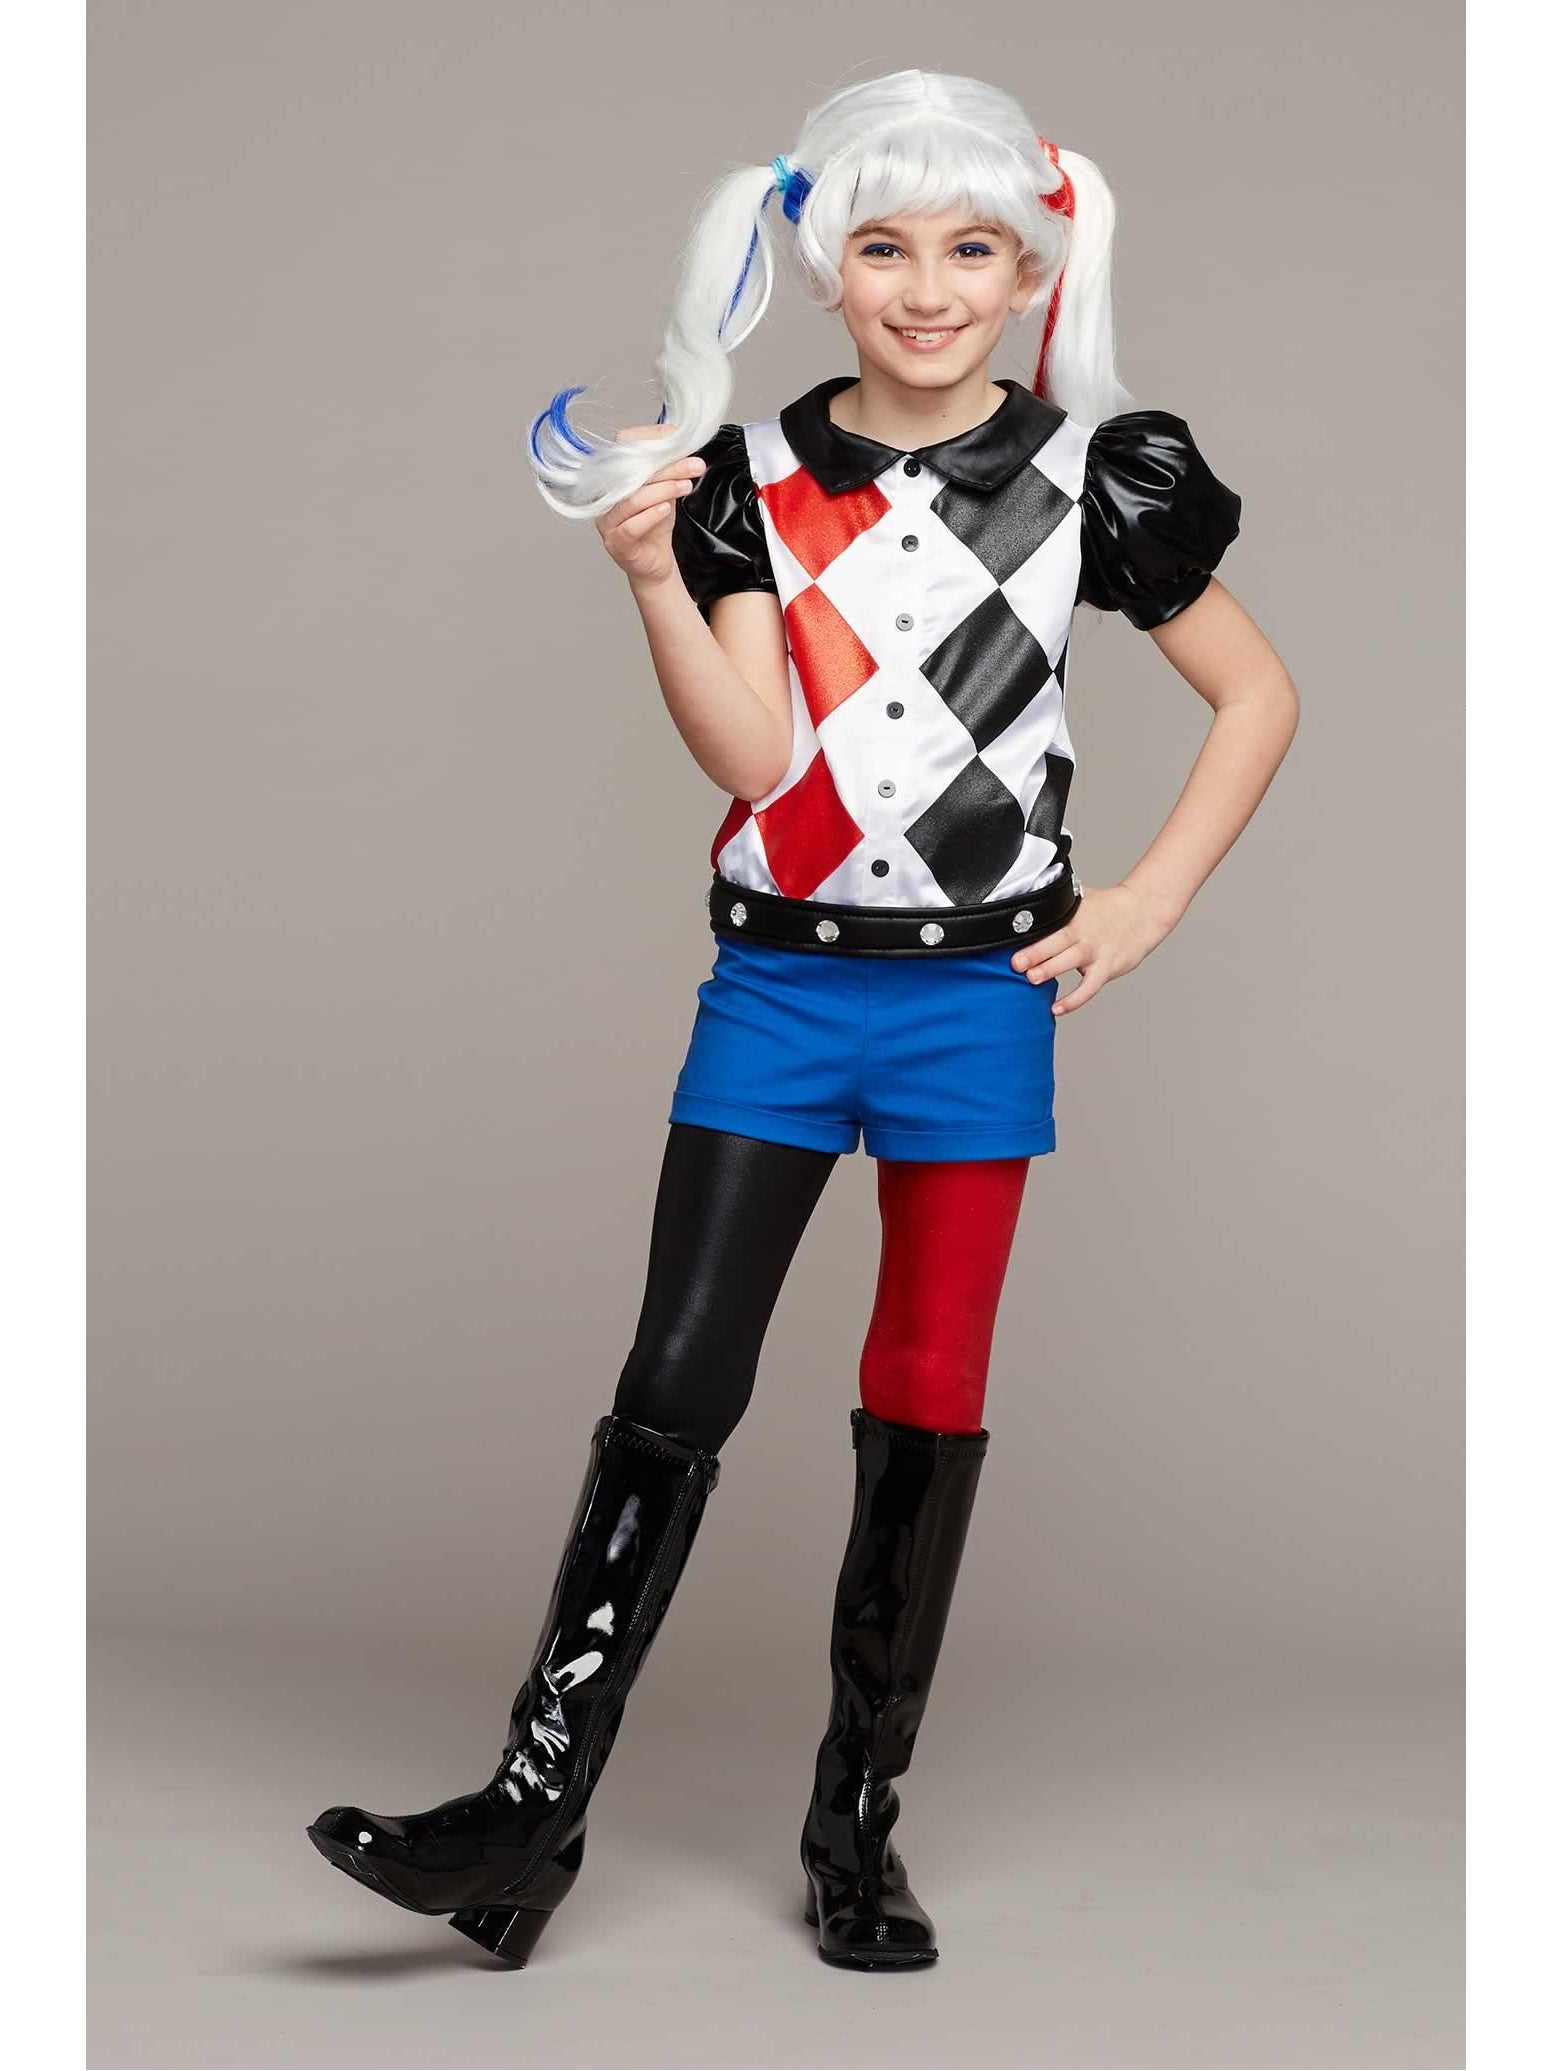 Harley Quinn Costume For Girls Chasing Fireflies 2469